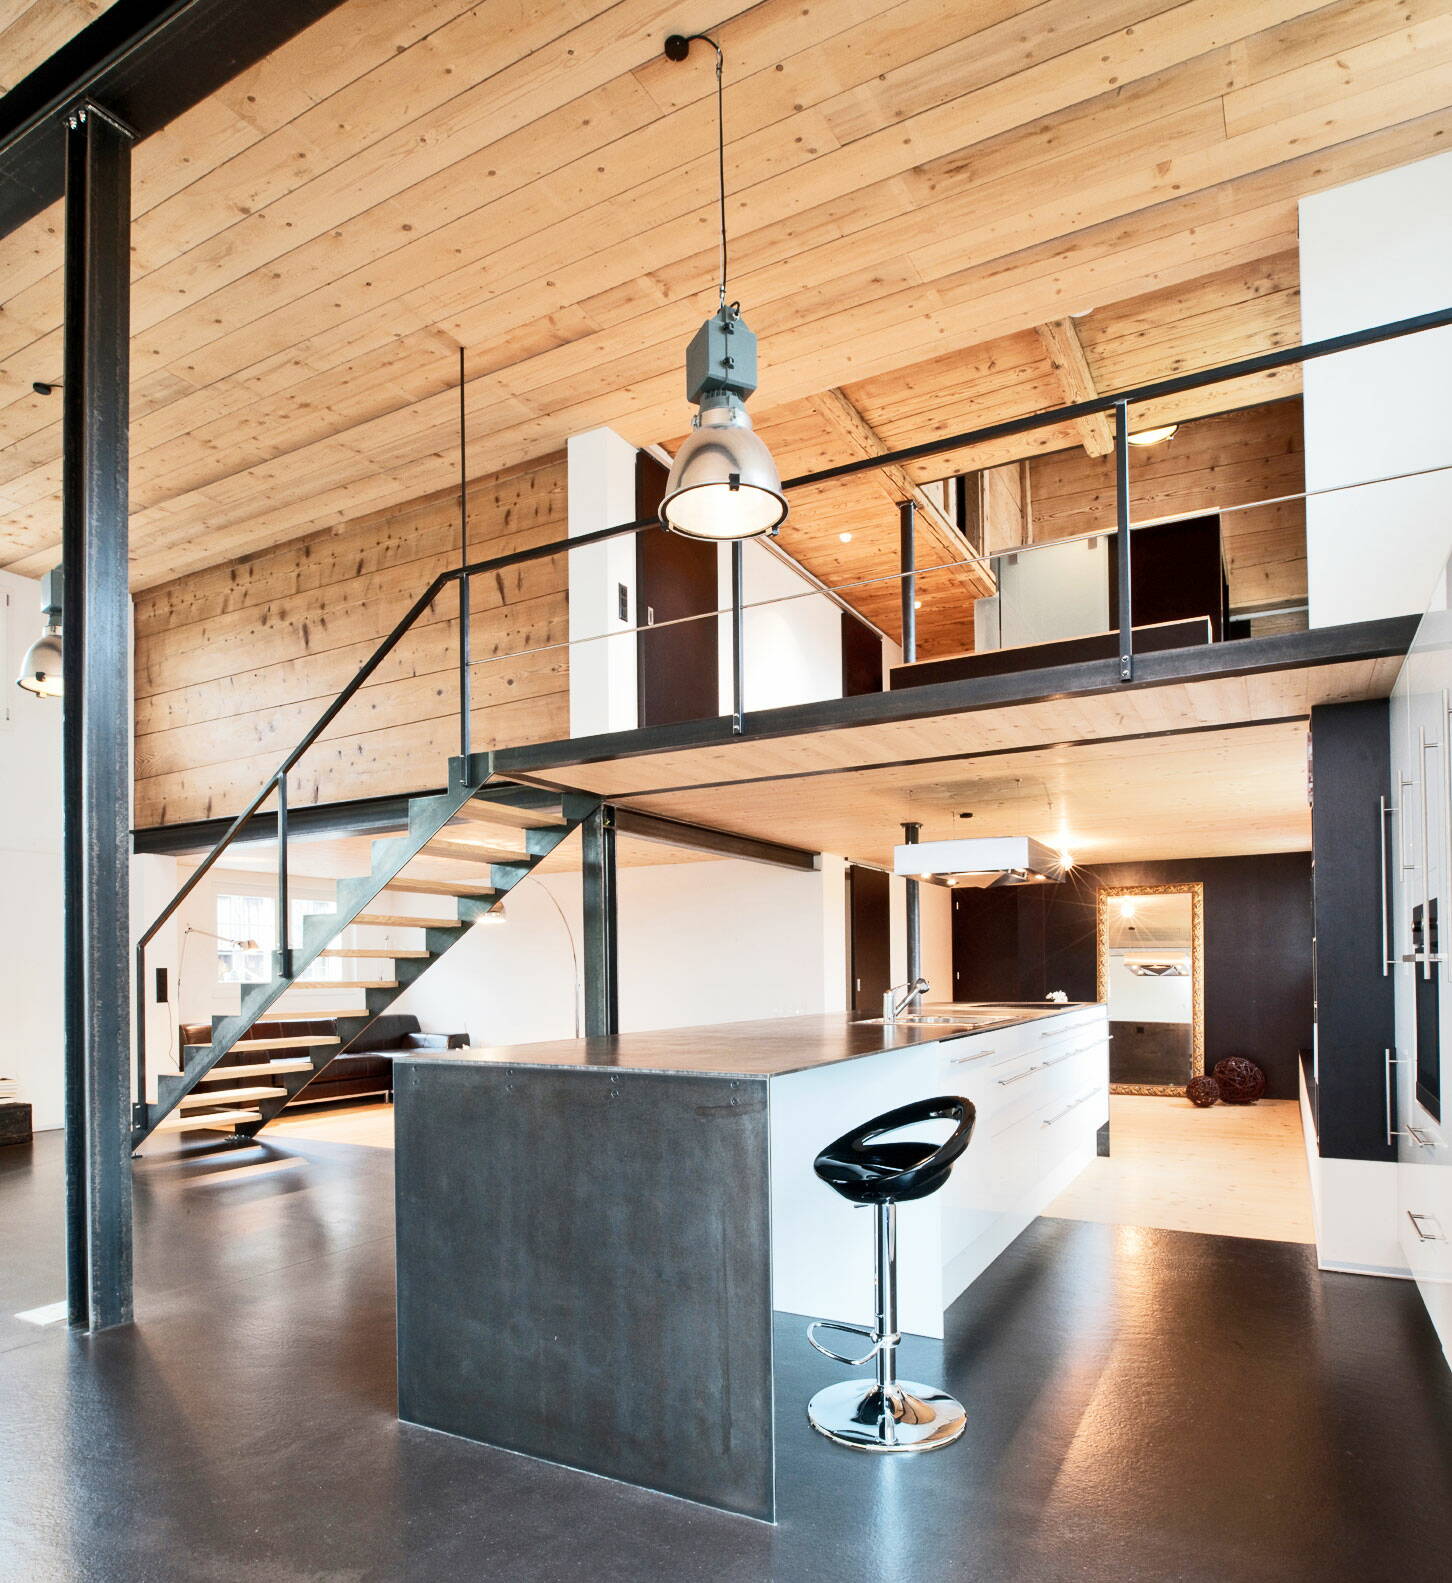 Sicht in eine Wohnküche eines Altbaus mit Wänden und Decke aus Holz sowie Küchen- und Konstruktionselementen aus Metall.